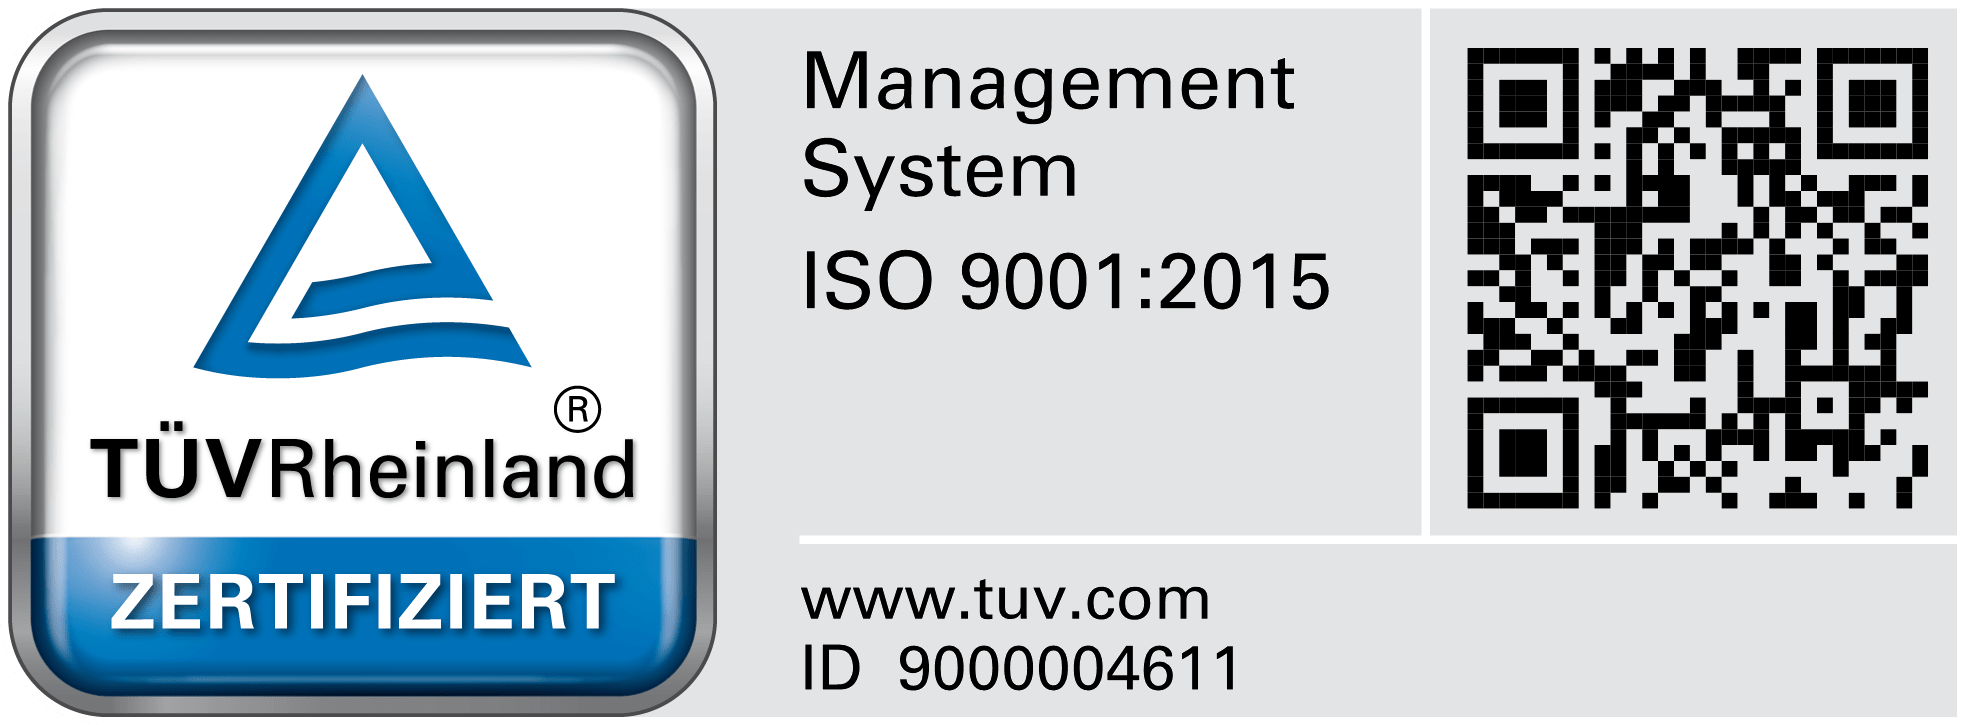 Wir sind gemäß ISO 9001 zertifiziert